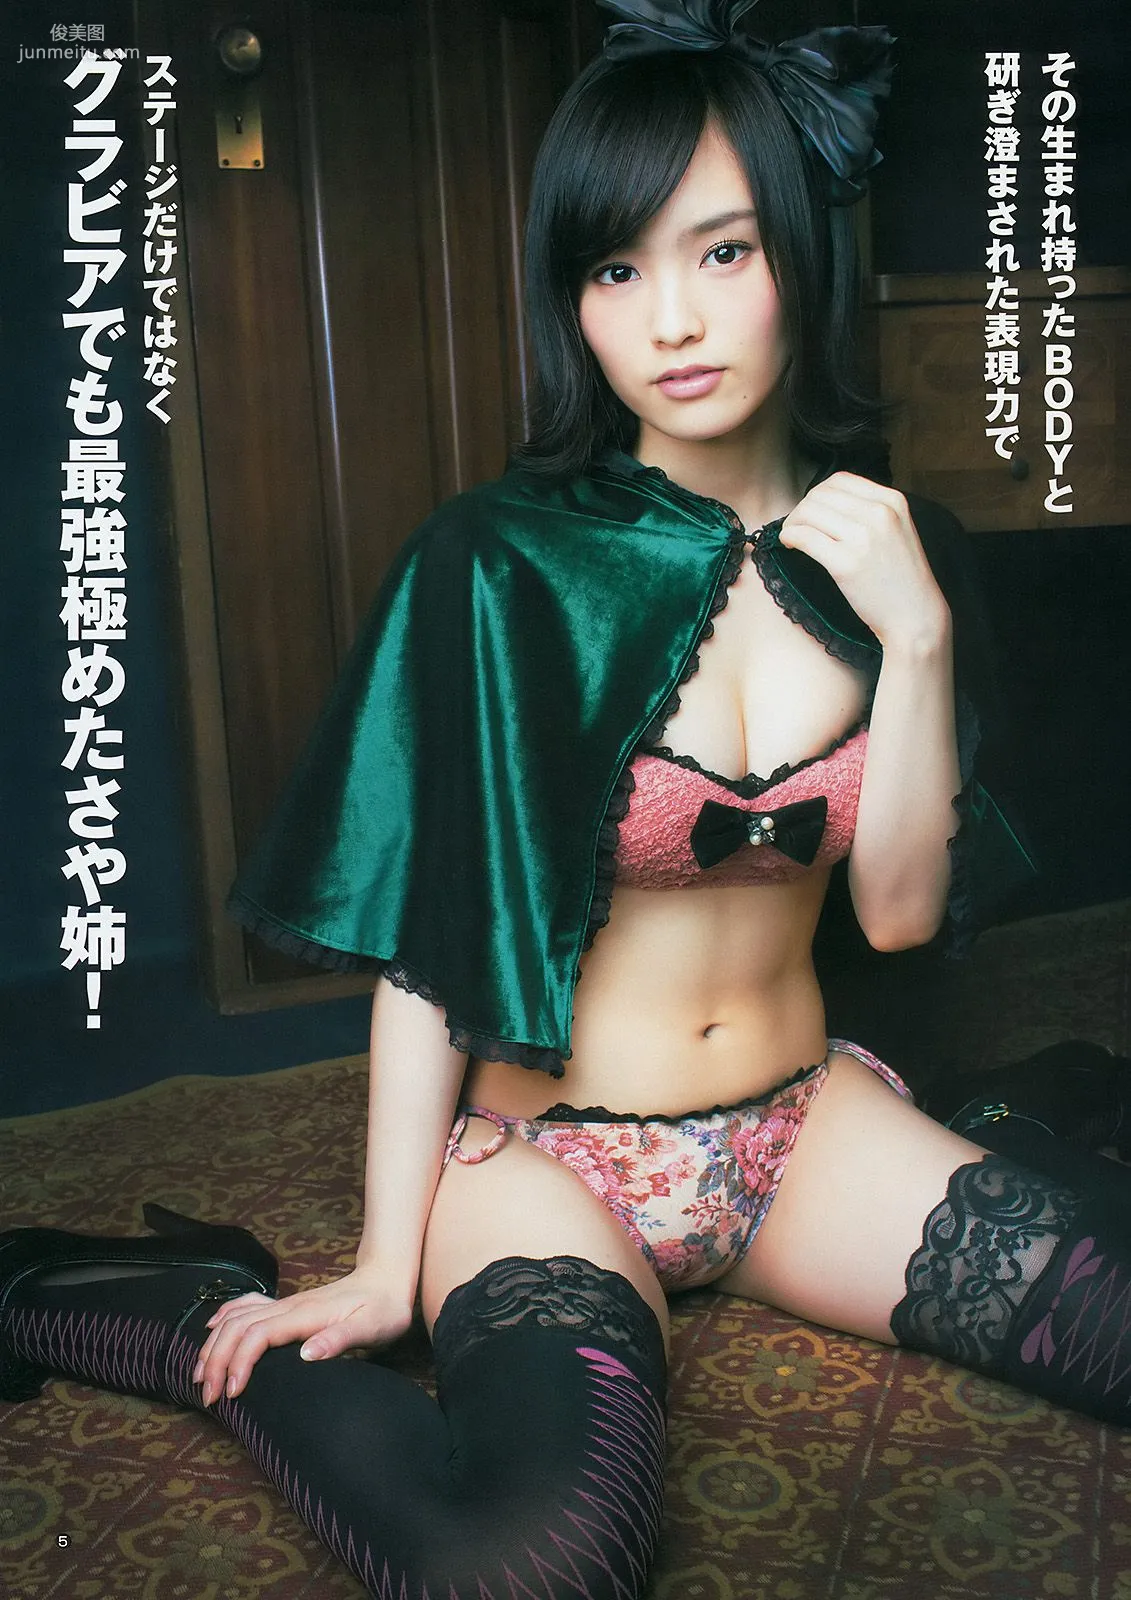 山本彩 48グループ 久慈暁子 [Weekly Young Jump] 2014年No.17 写真杂志6